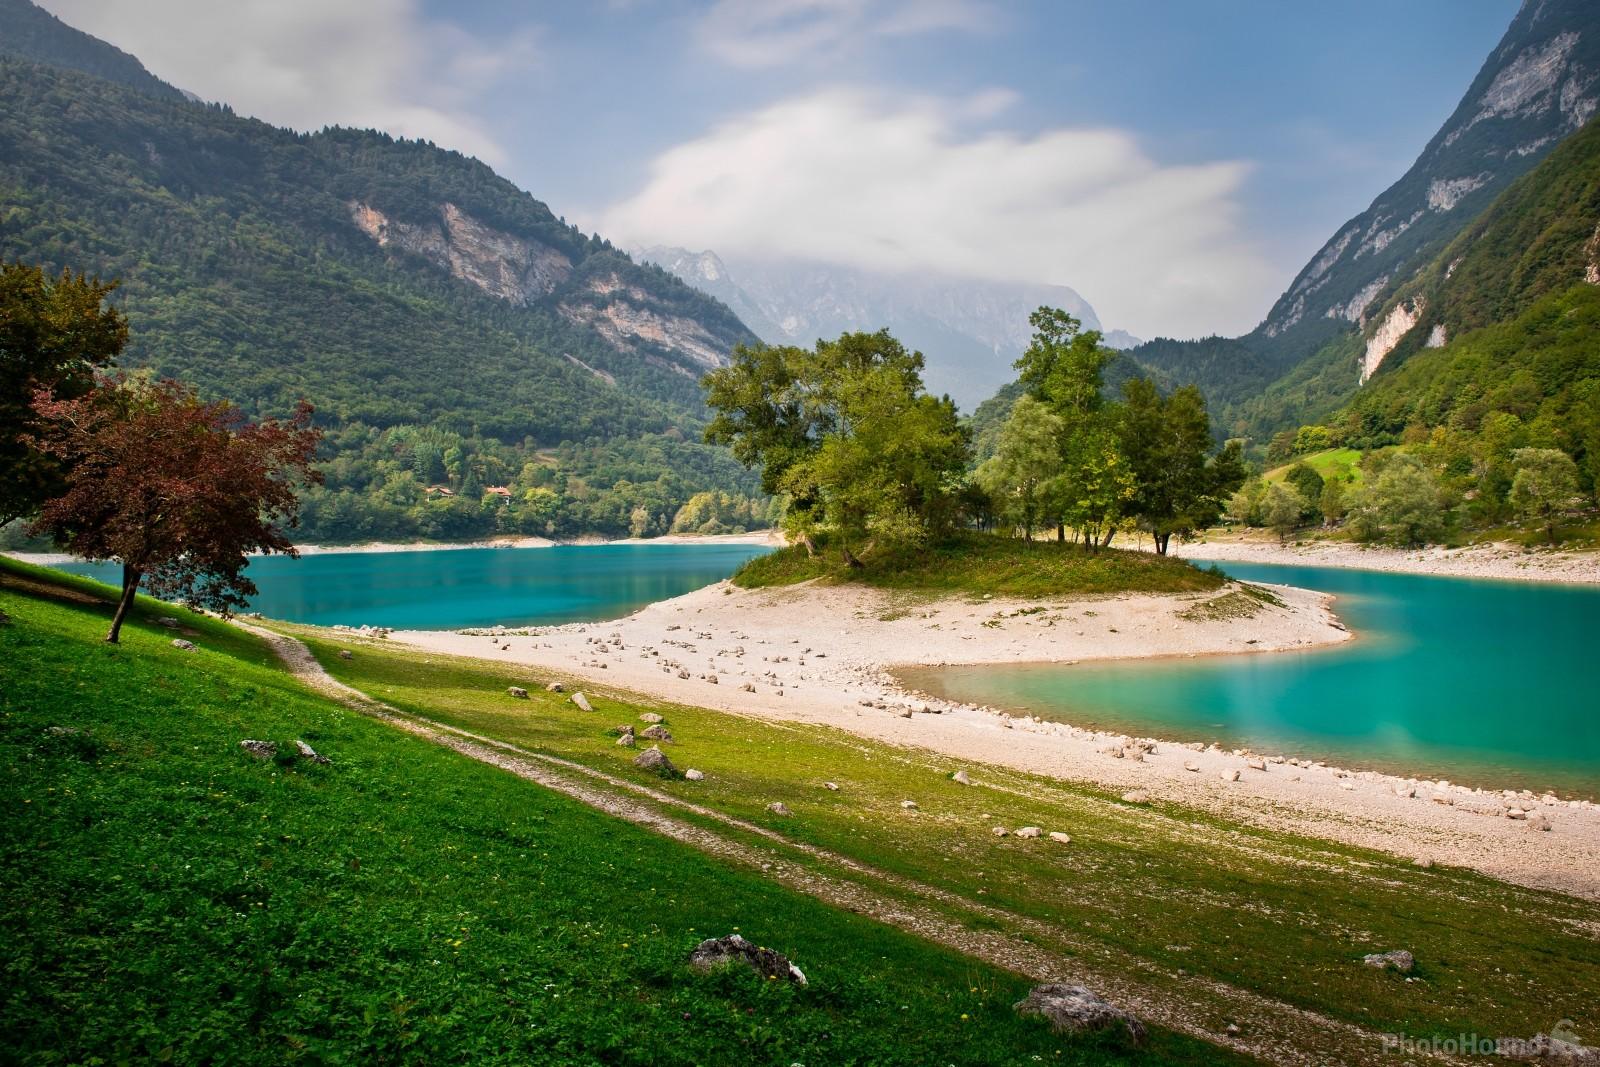 Image of Lago di Tenno by VOJTa Herout